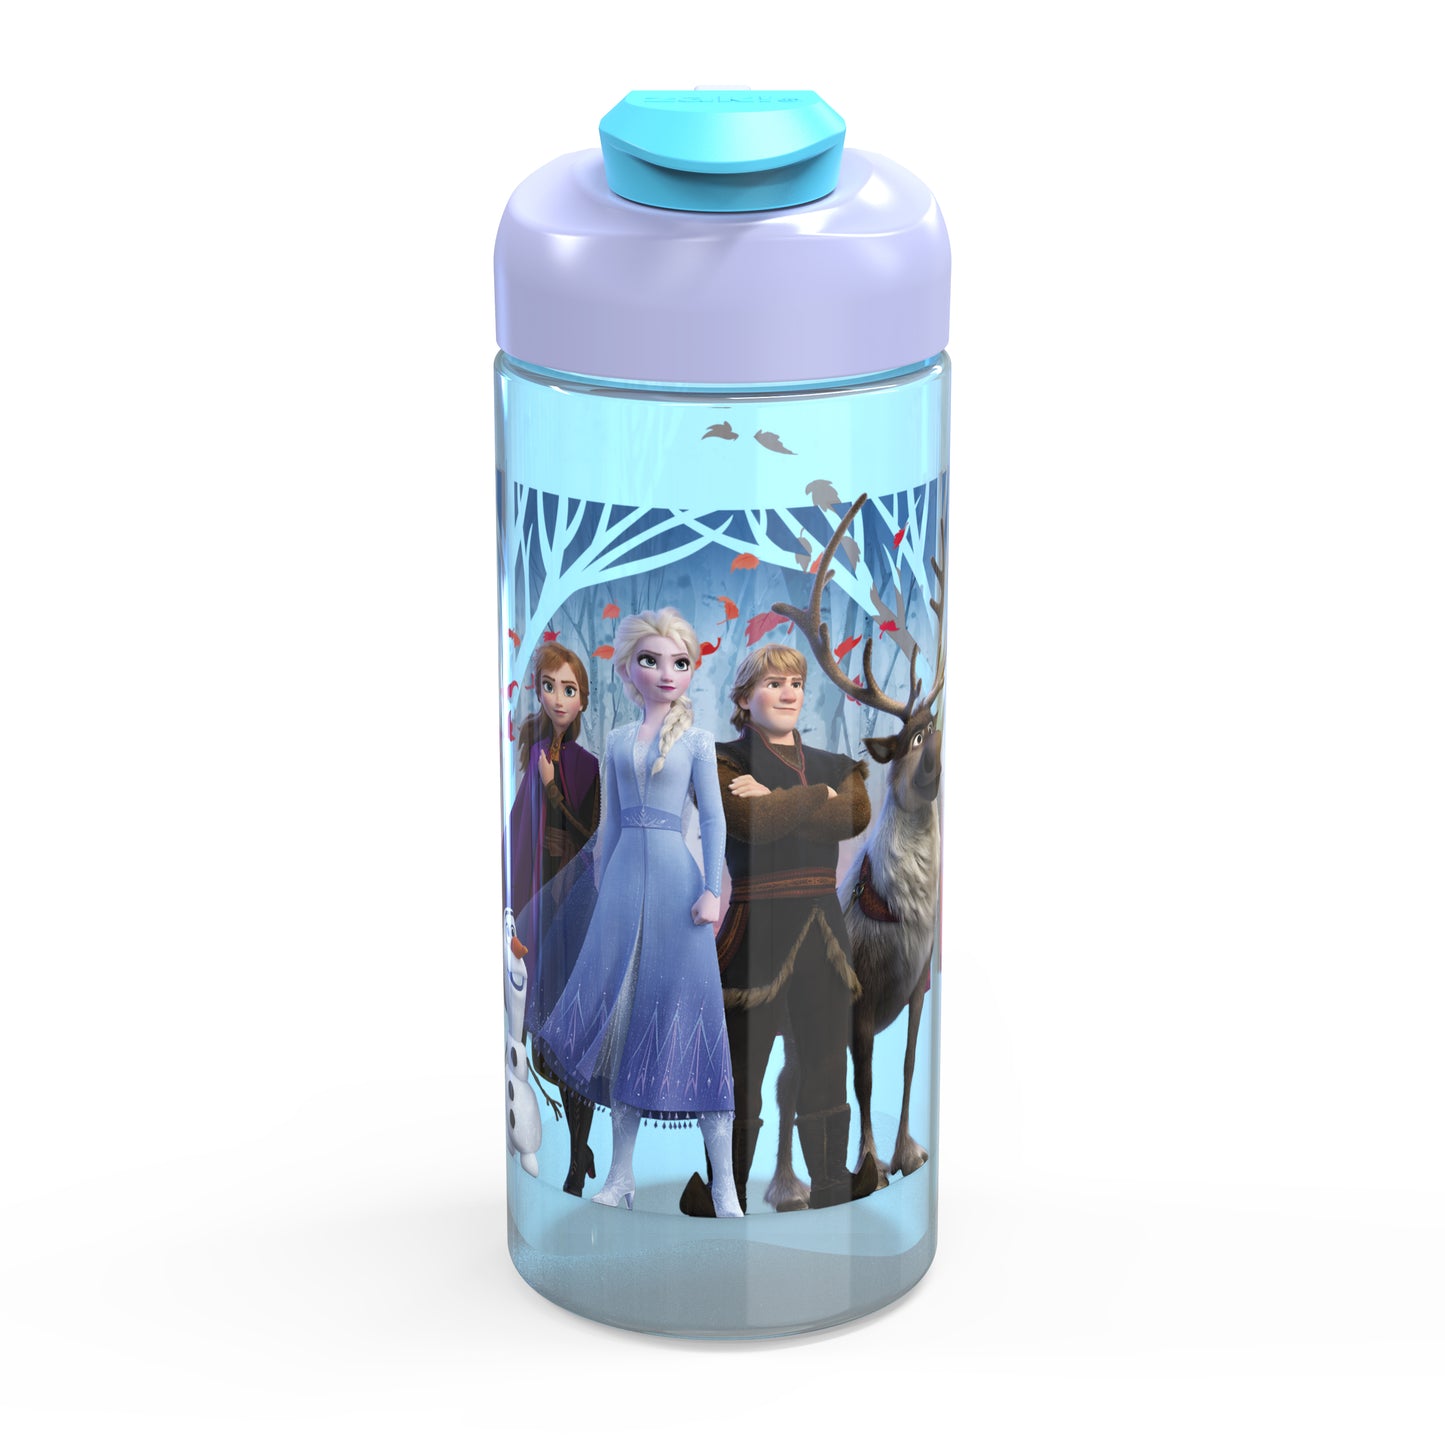 Disney Frozen 2 Kids Water Drinking Bottle, Made of Plastic, Leak-Proof Water Bottle (Elsa & Anna, 16 oz, BPA-Free) Random Style